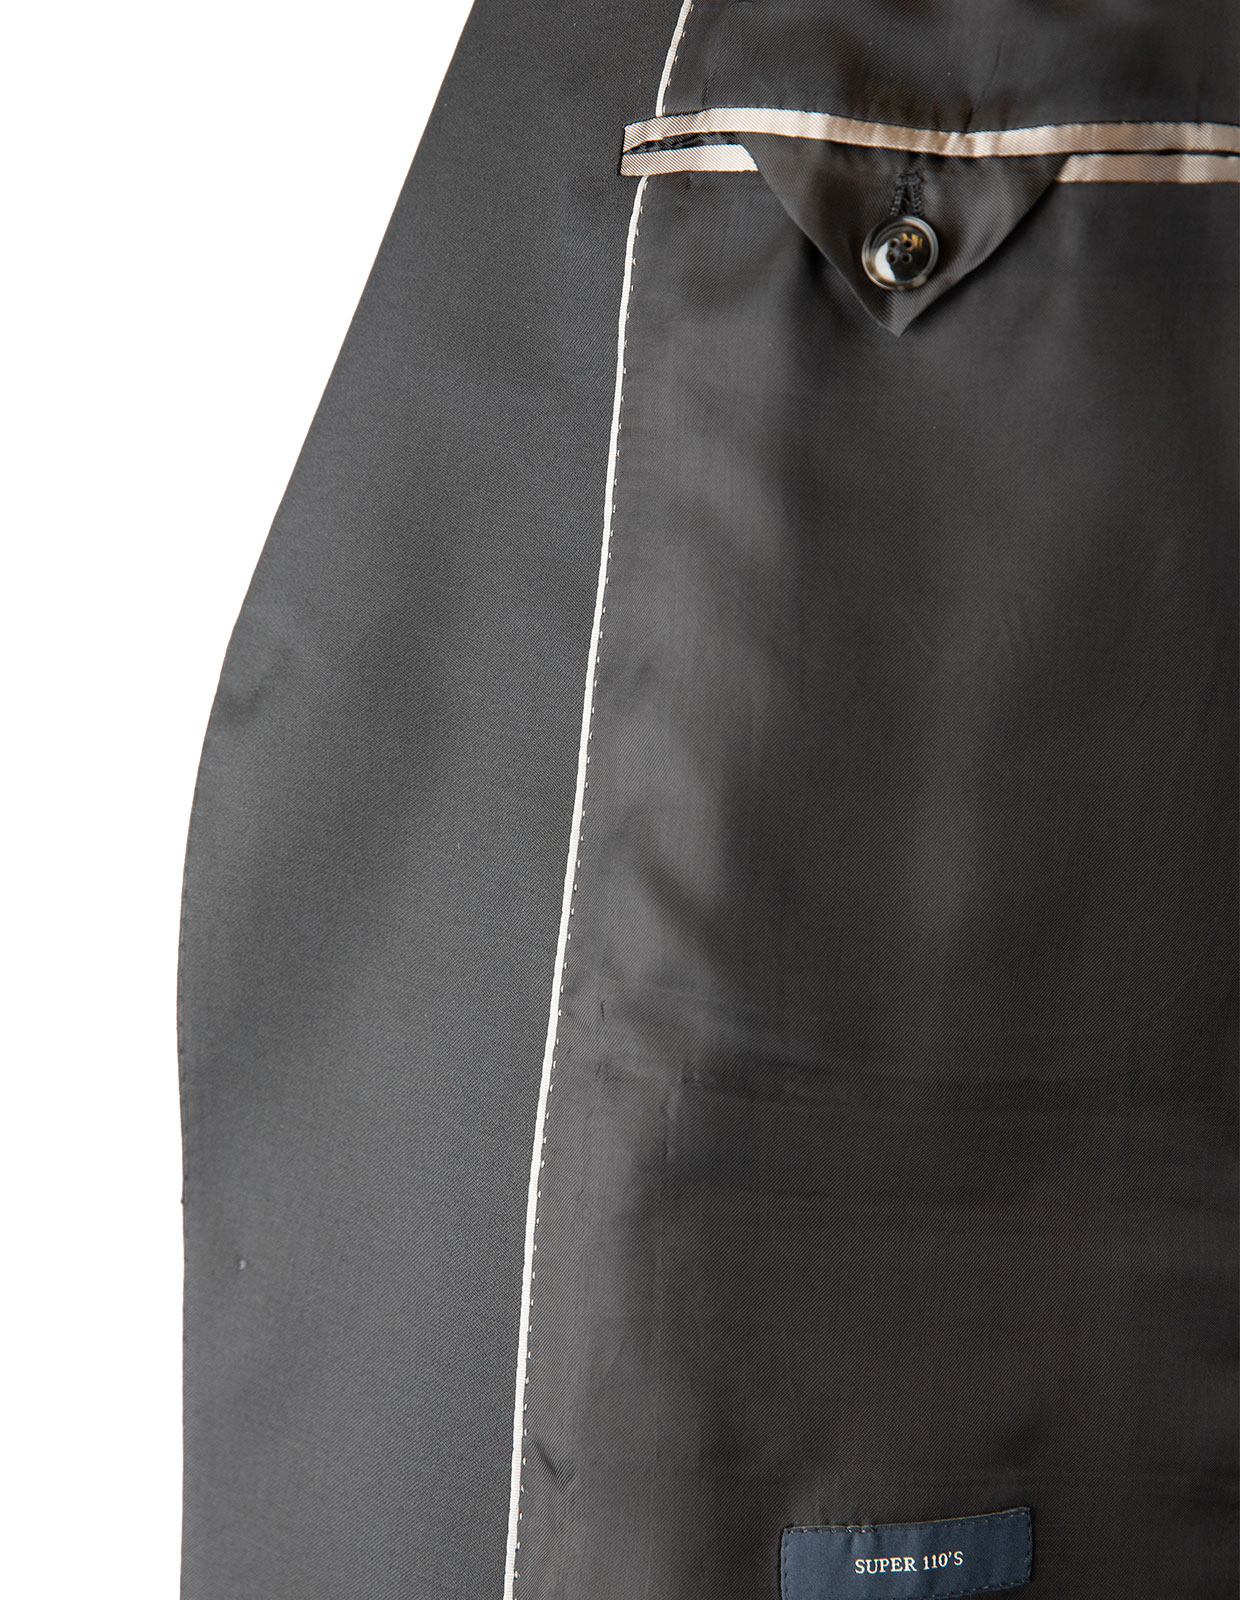 Edson Suit Jacket 110's Wool Mix & Match Black Stl 60